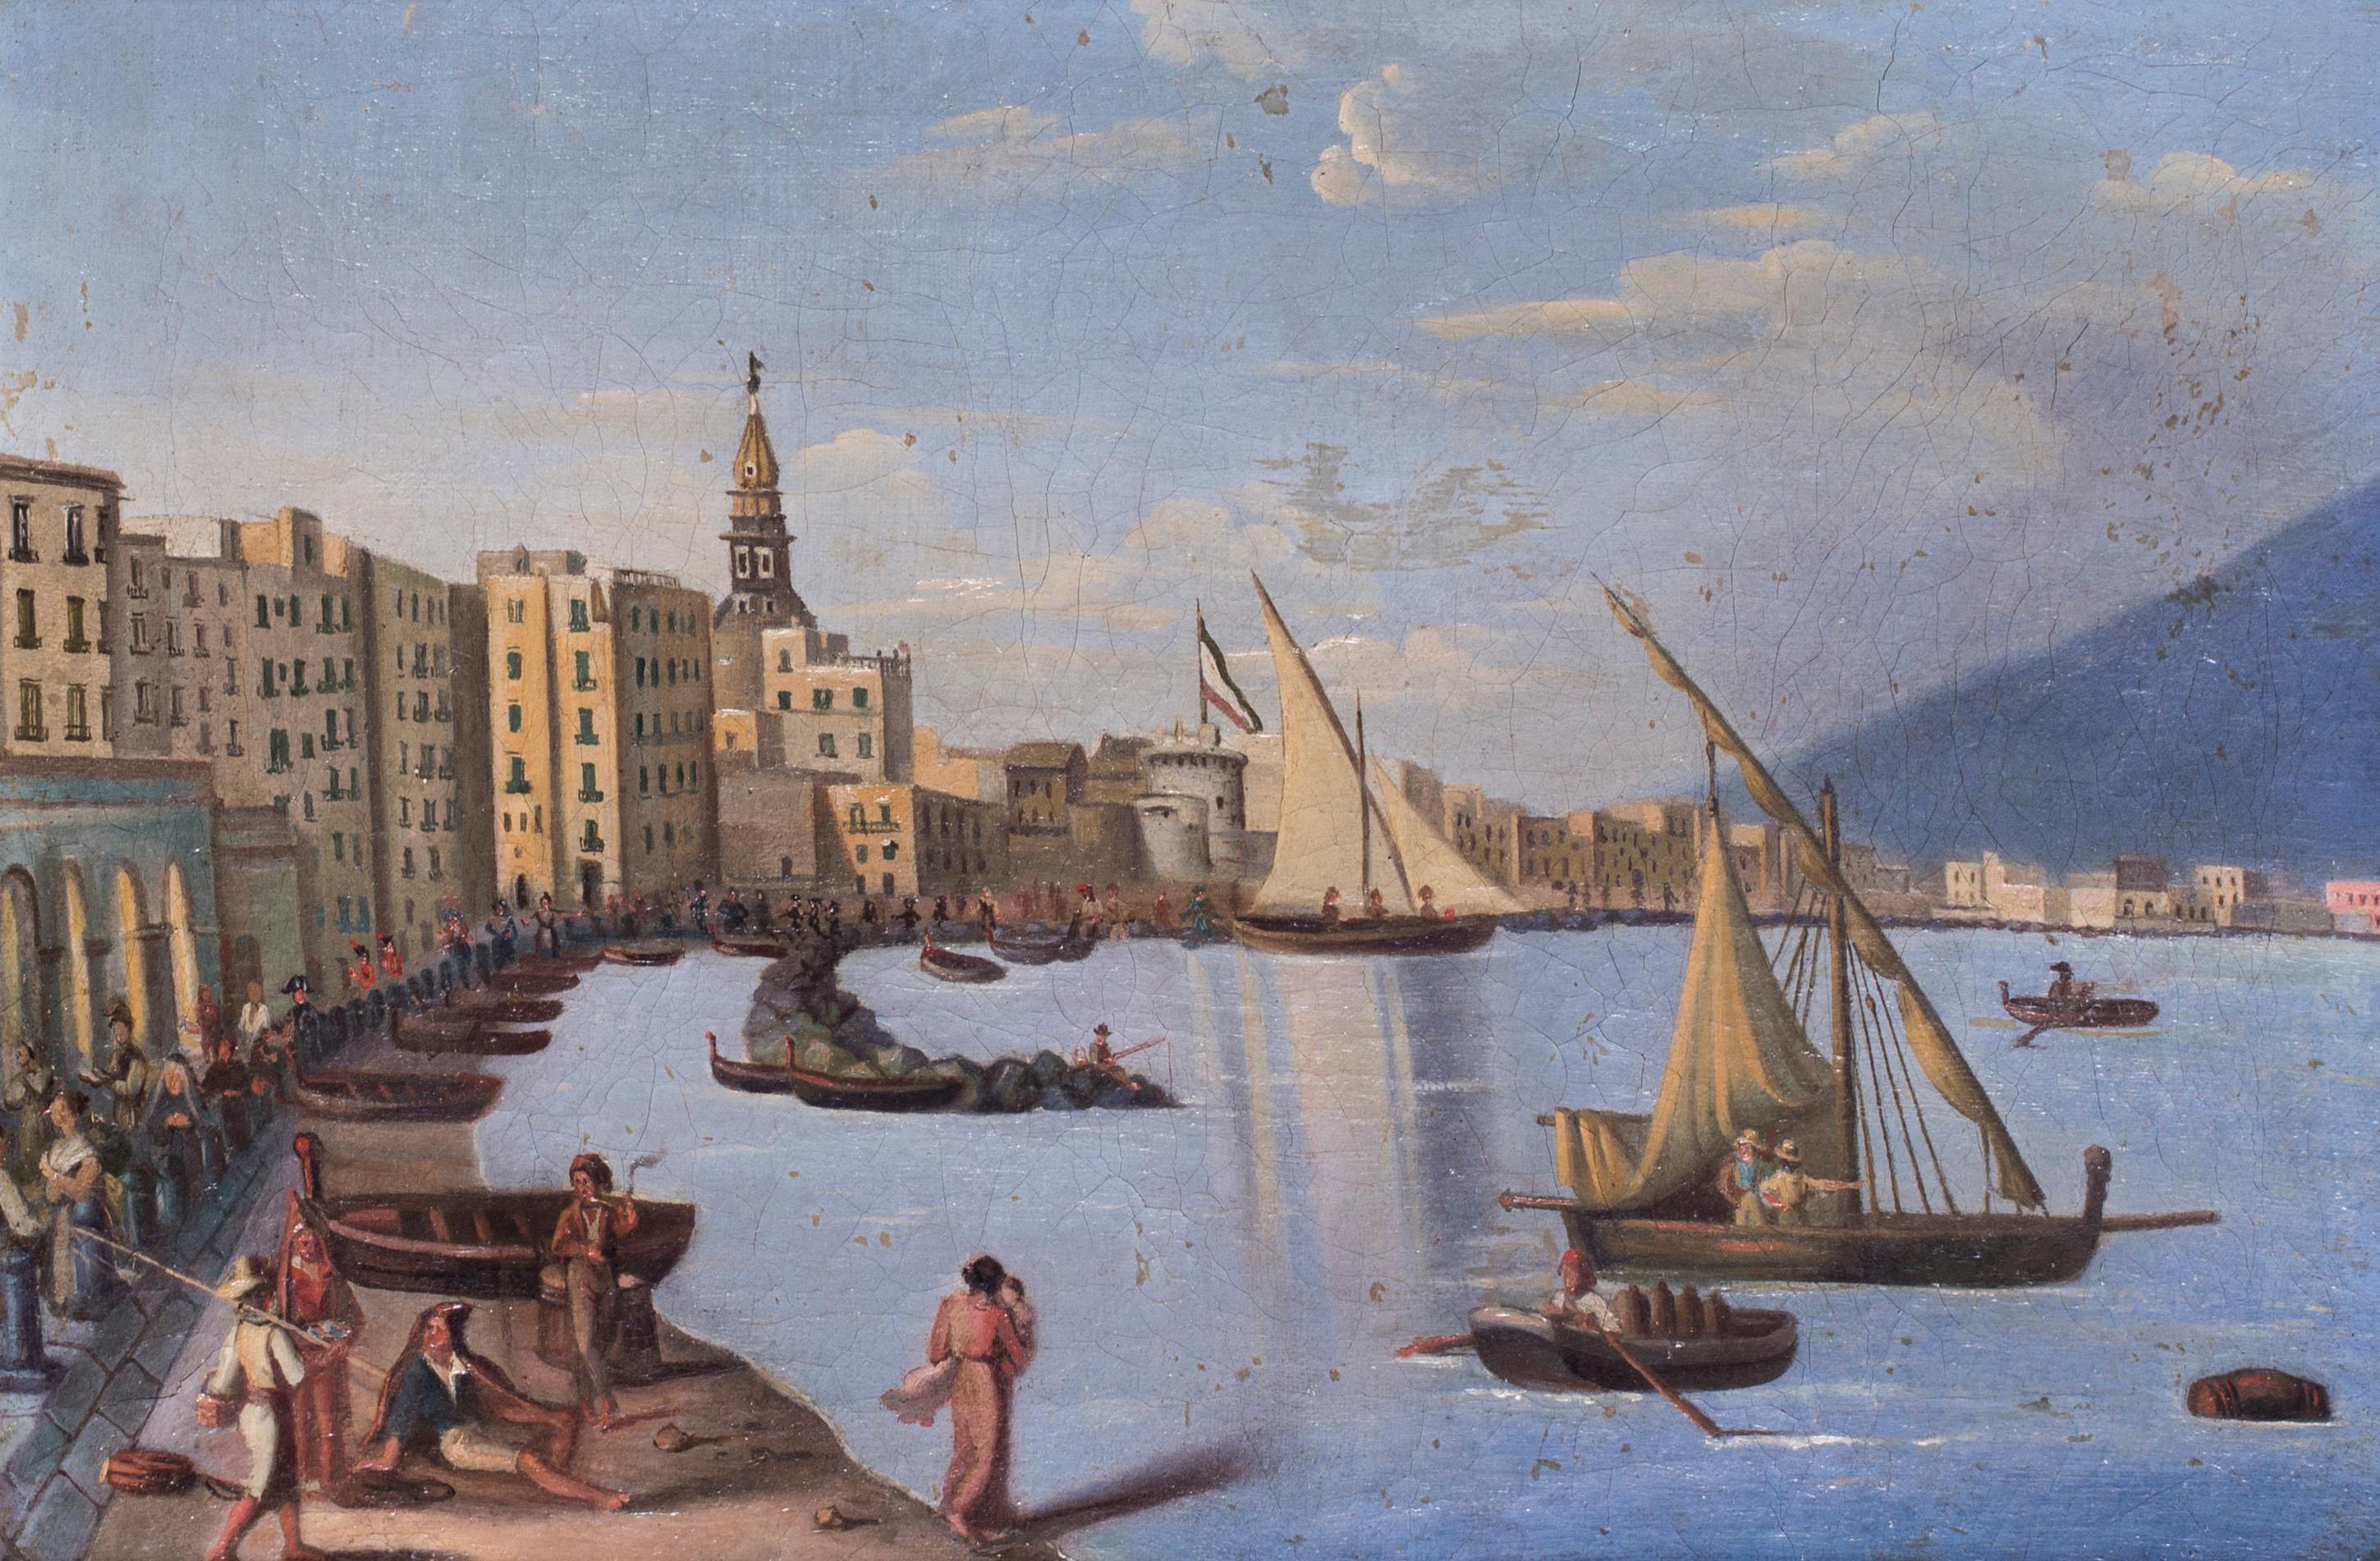 Unknown Landscape Painting – Naples während der napoleonischen Besatzung, Gemälde in Öl auf Leinwand, um 1810